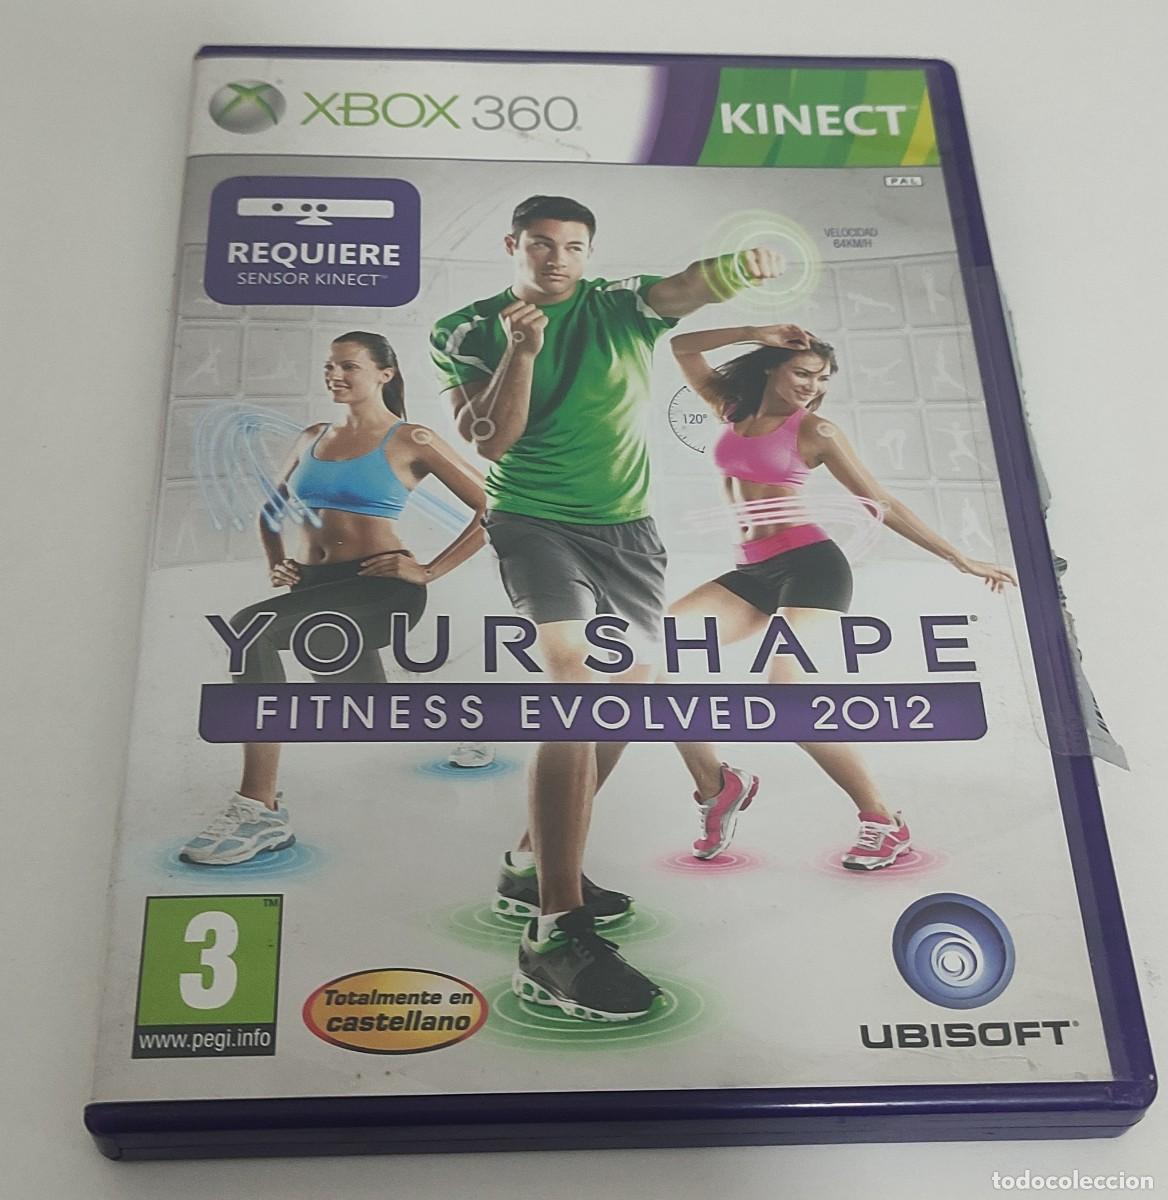 juego xbox 360 your shape fitness evolved 2012 - Comprar Videojogos e  Consolas Xbox 360 no todocoleccion